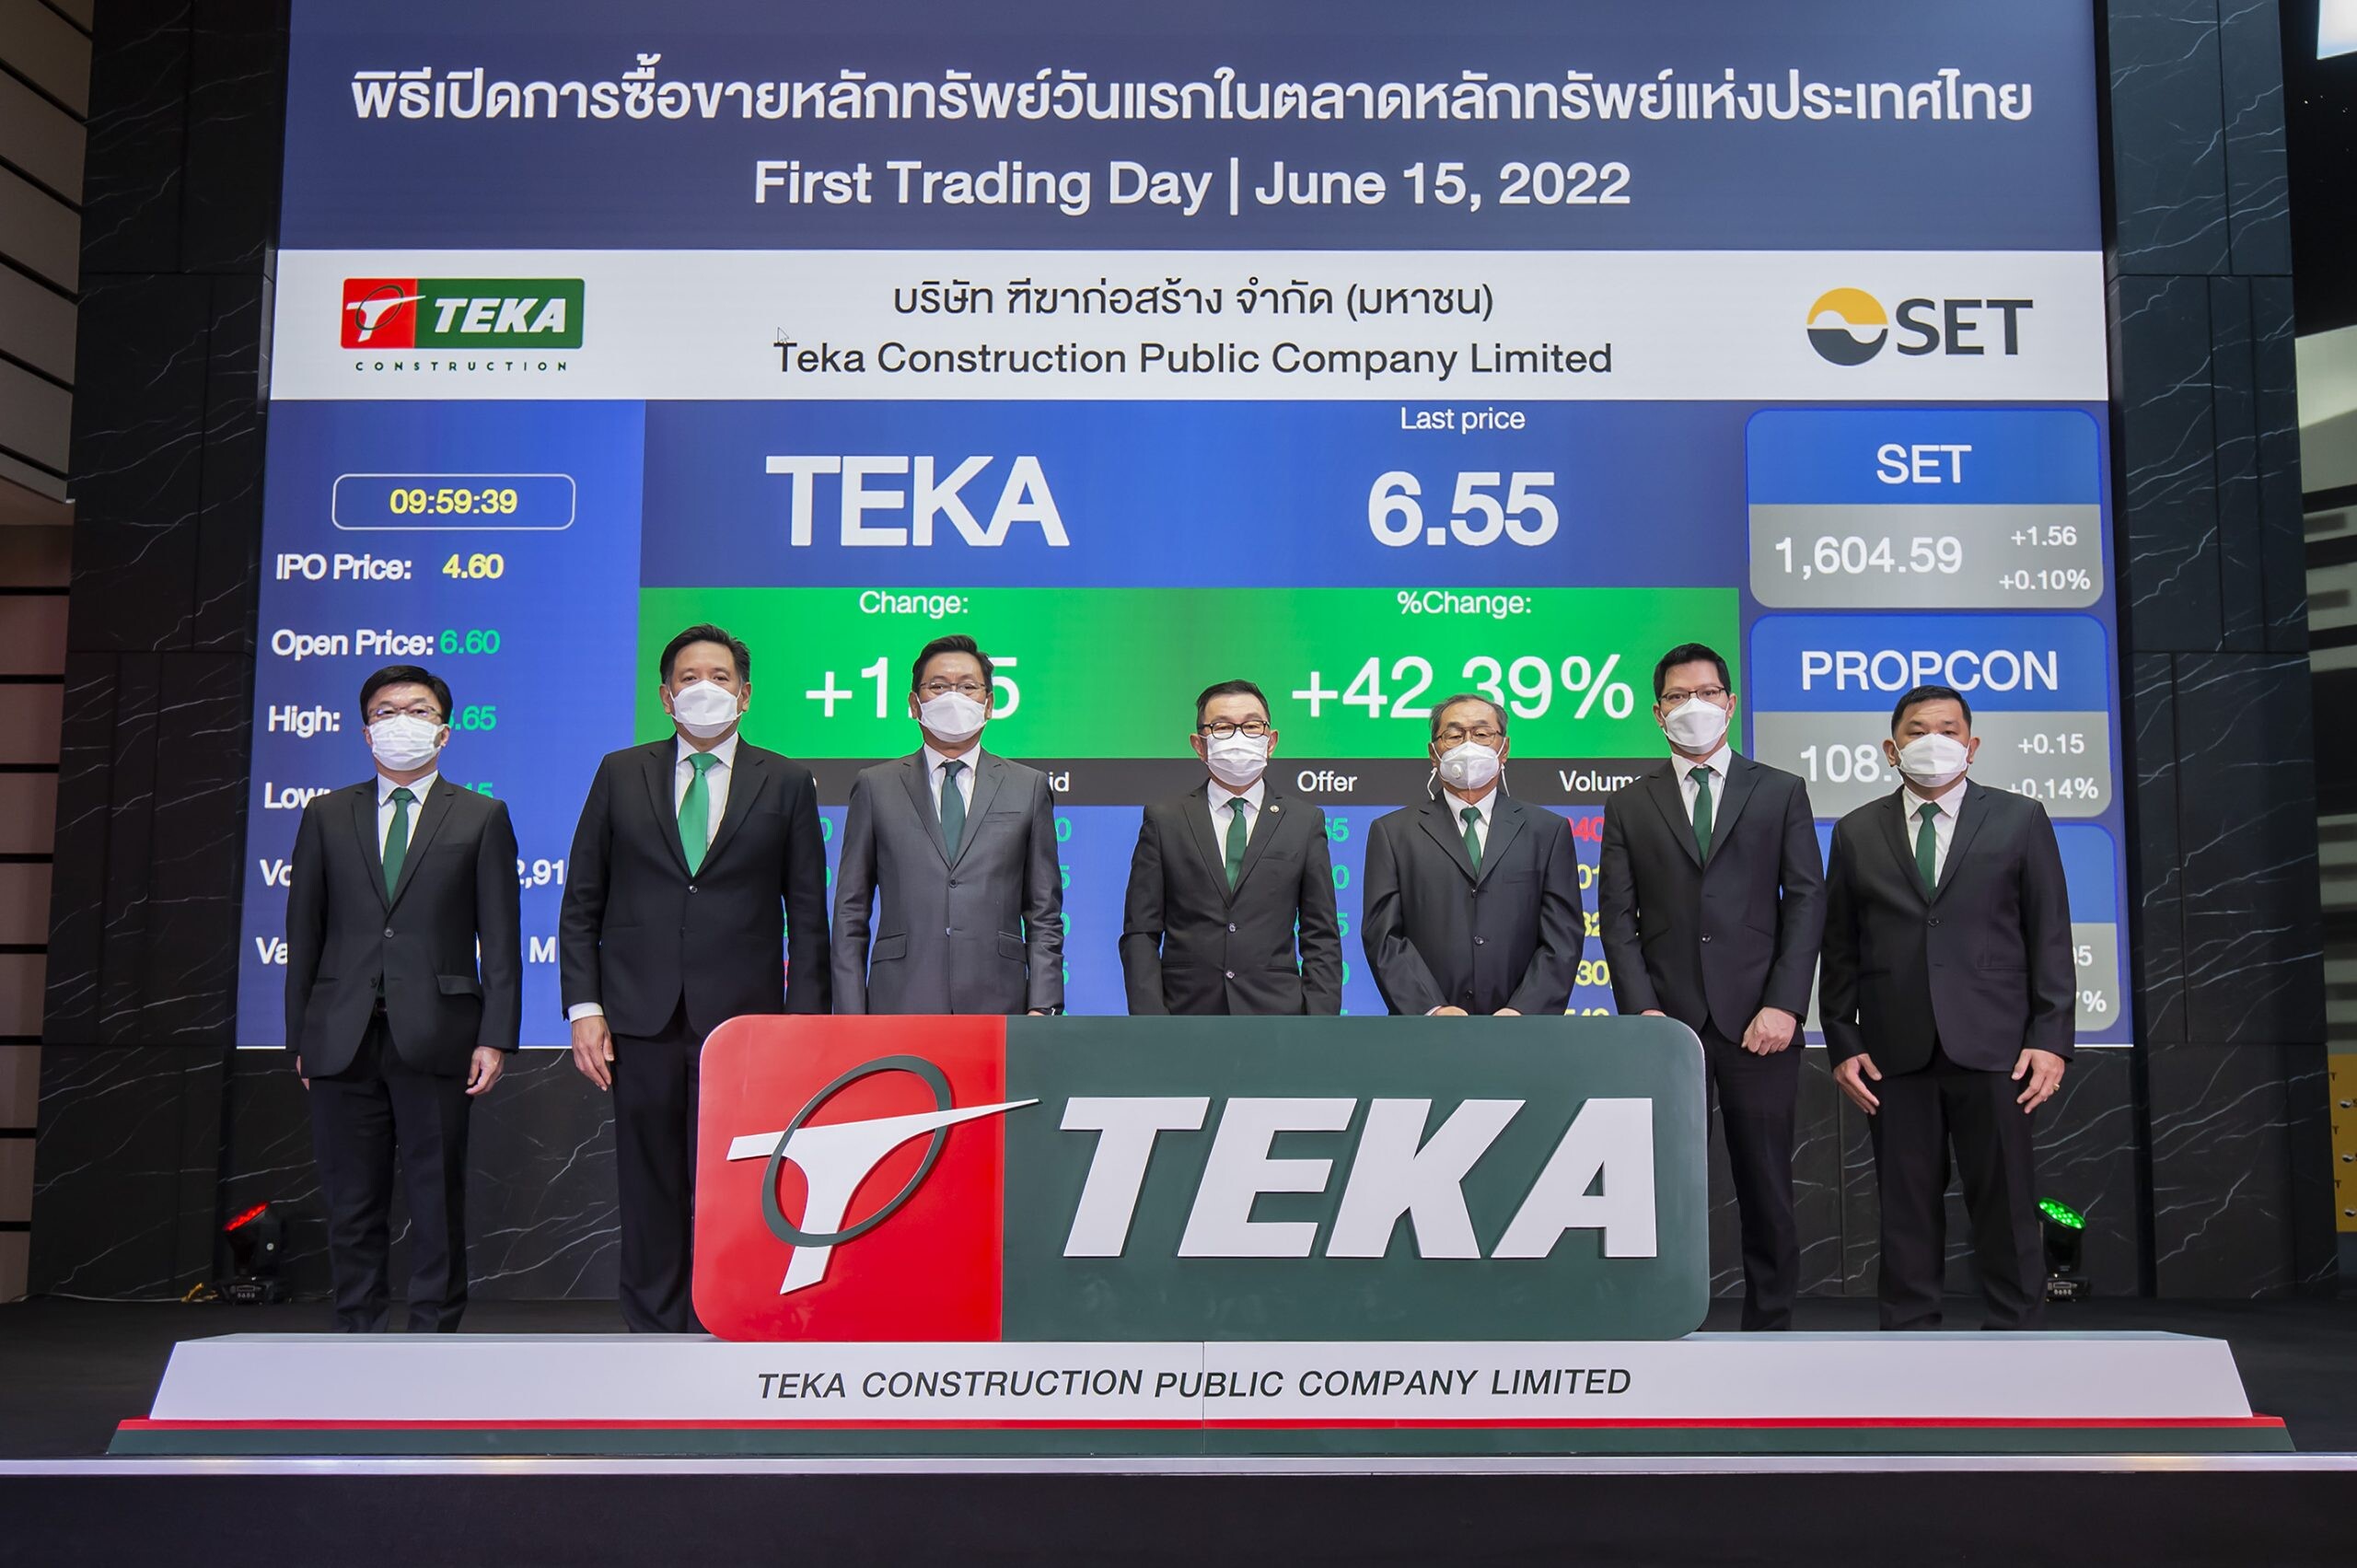 TEKA จุดพลุเทรดวันแรก ราคาหุ้นเปิดตลาดพุ่ง 43.48% สยายปีกงานรับเหมาก่อสร้างชั้นนำระดับประเทศ